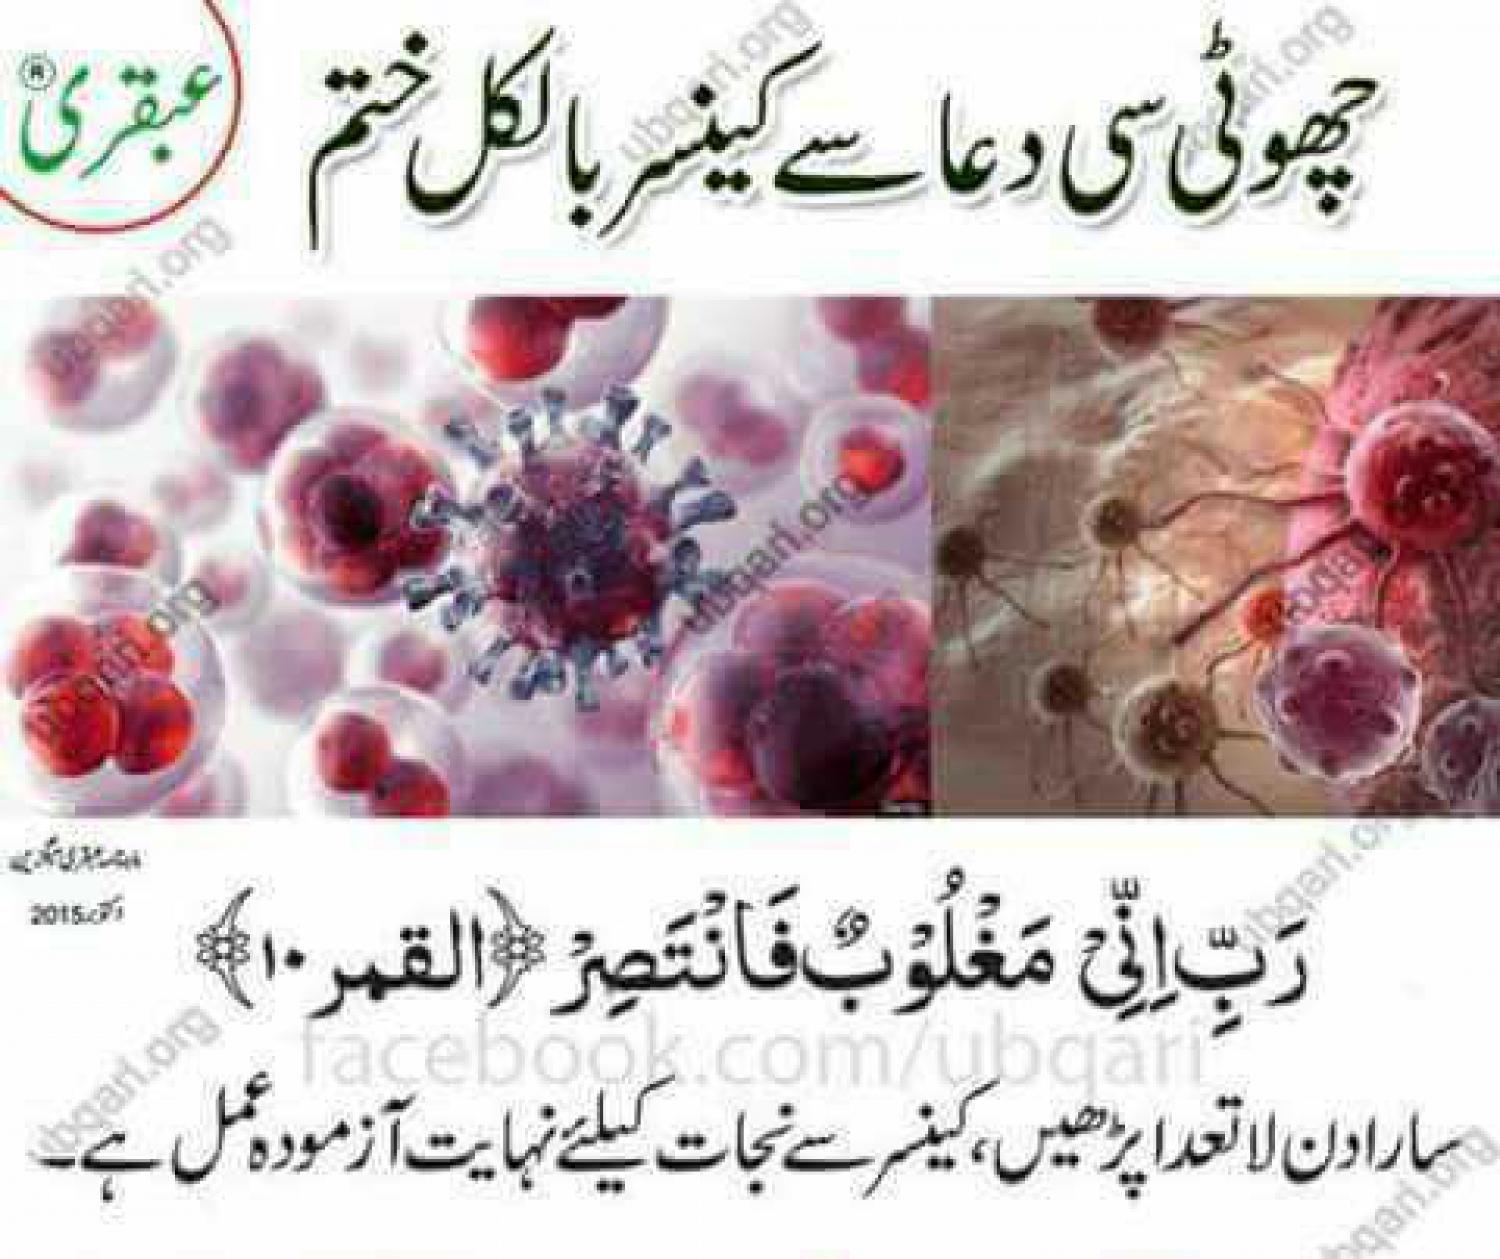 Assalam O Alaikum Wallpaper - Genes Relacionados Al Cancer , HD Wallpaper & Backgrounds